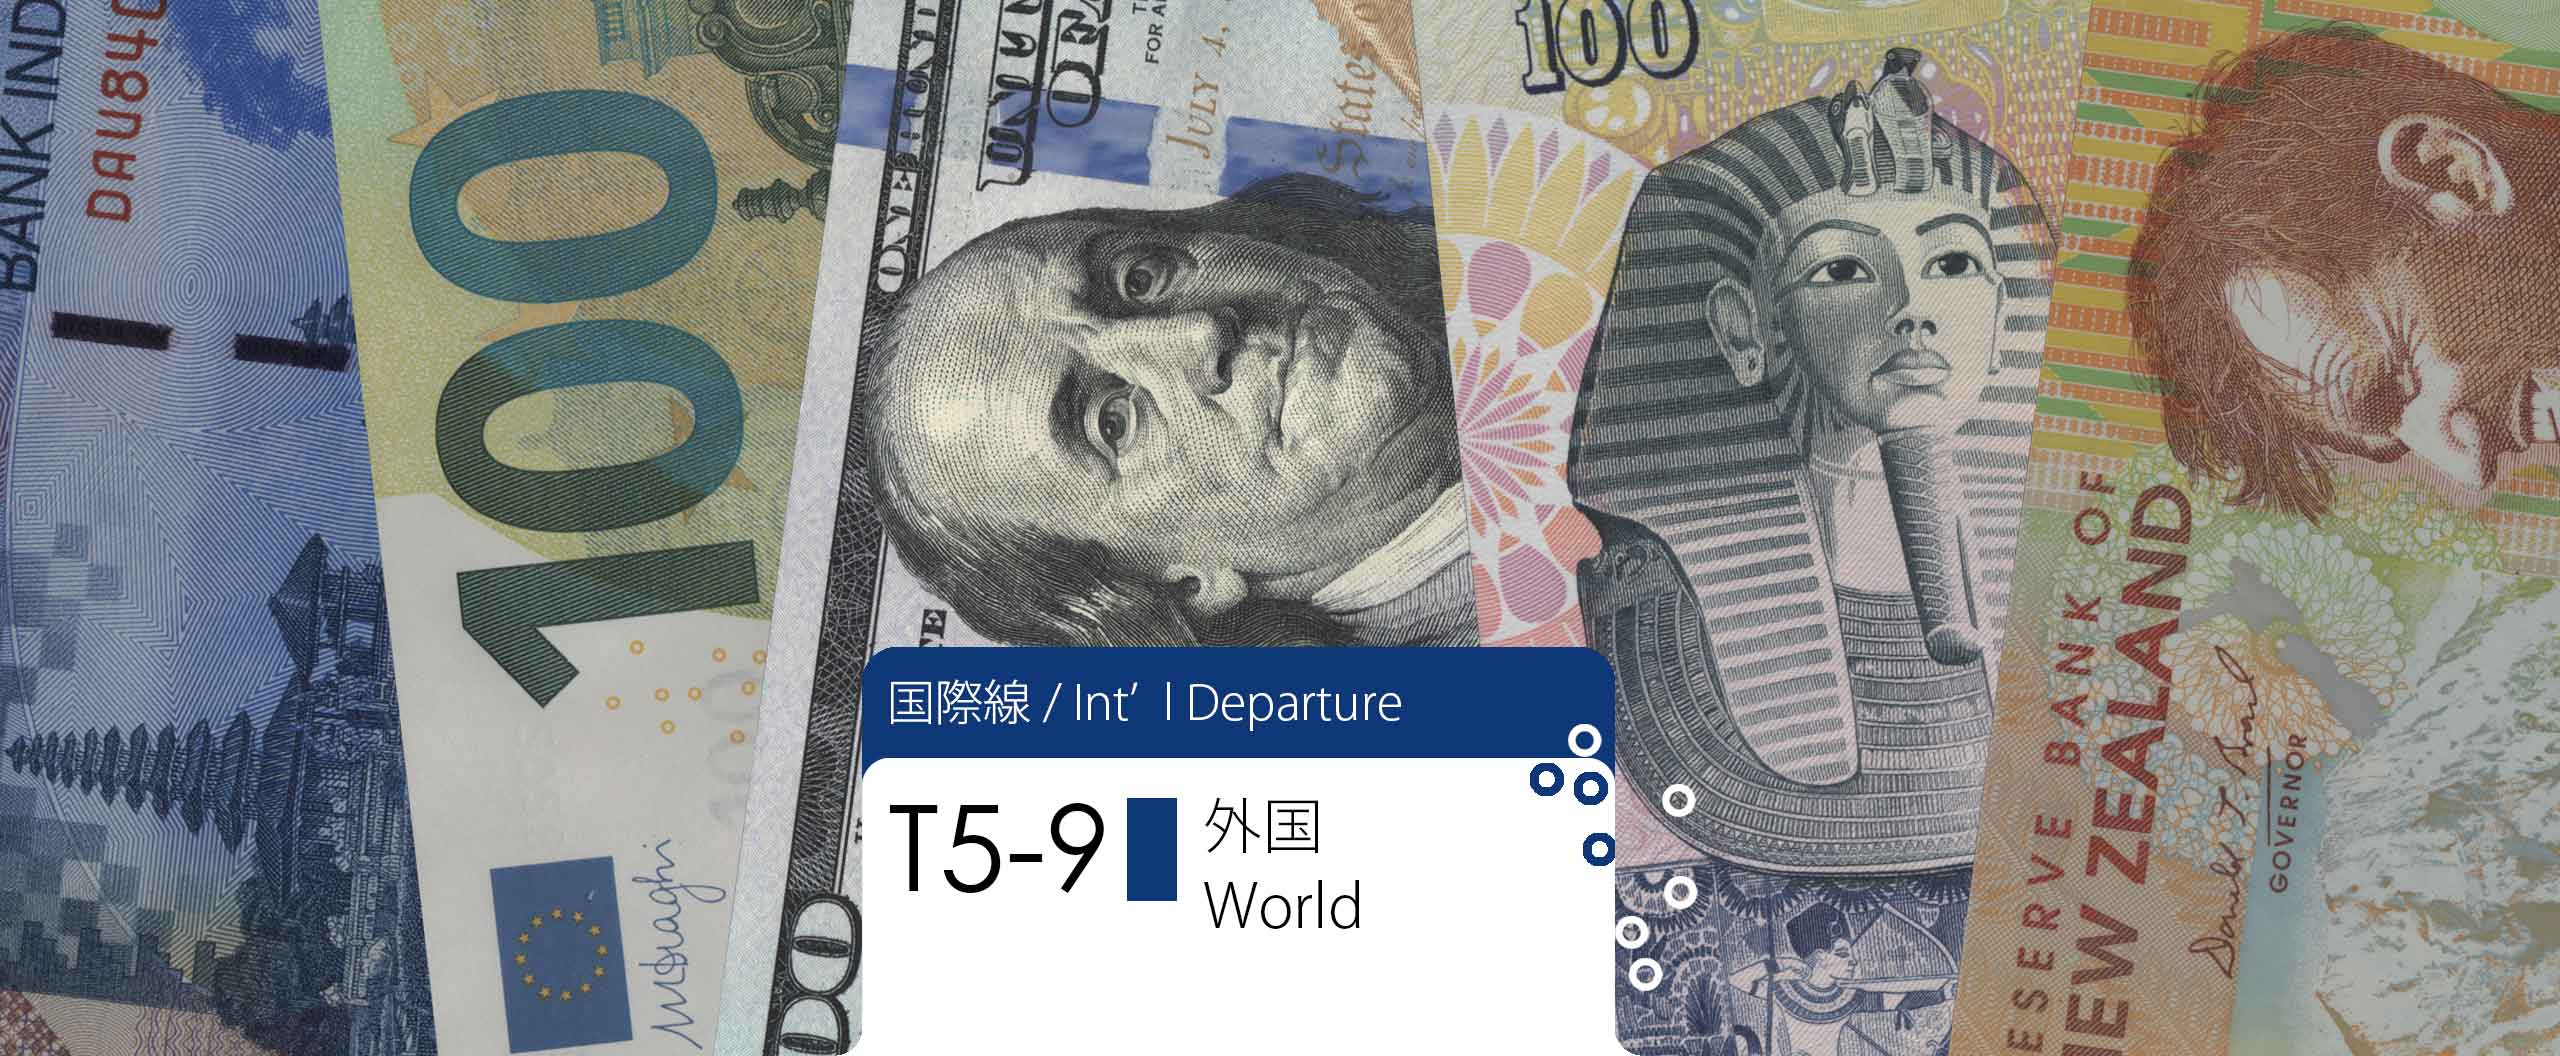 外国紙幣 / Paper Money: World 国際線ターミナル / Int'l Departure